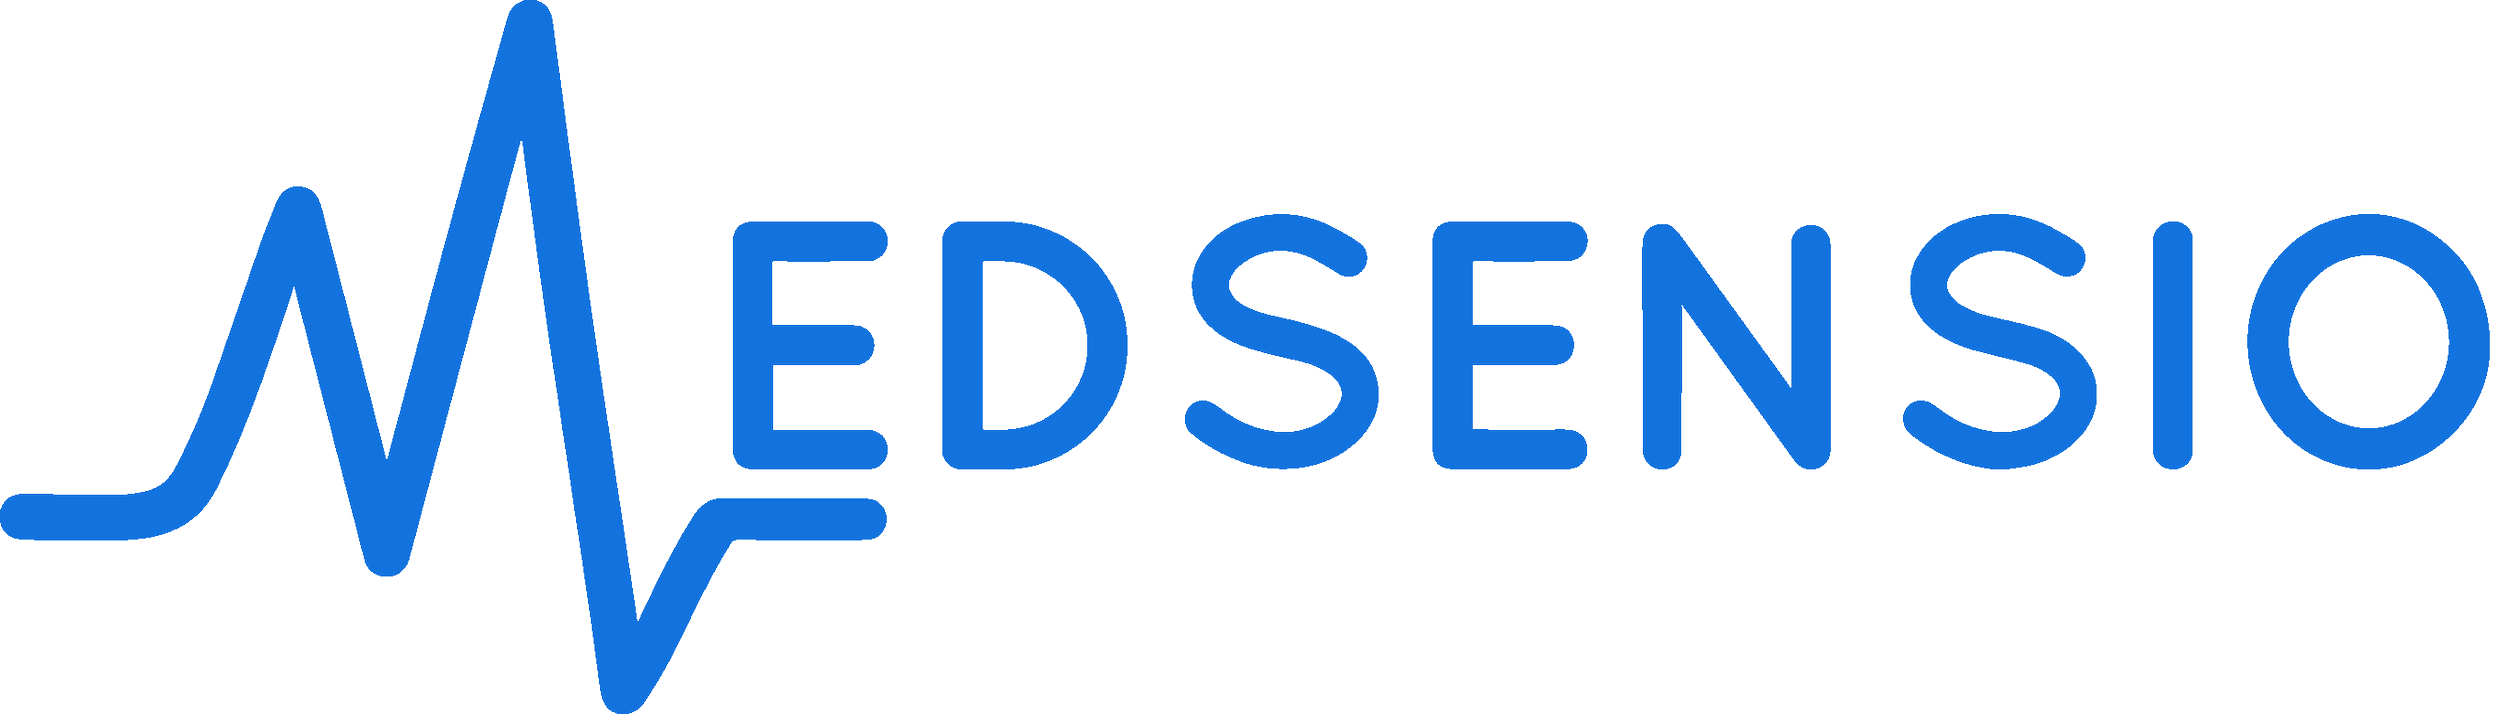 Medsensio-Whole-Logo-Blue.png